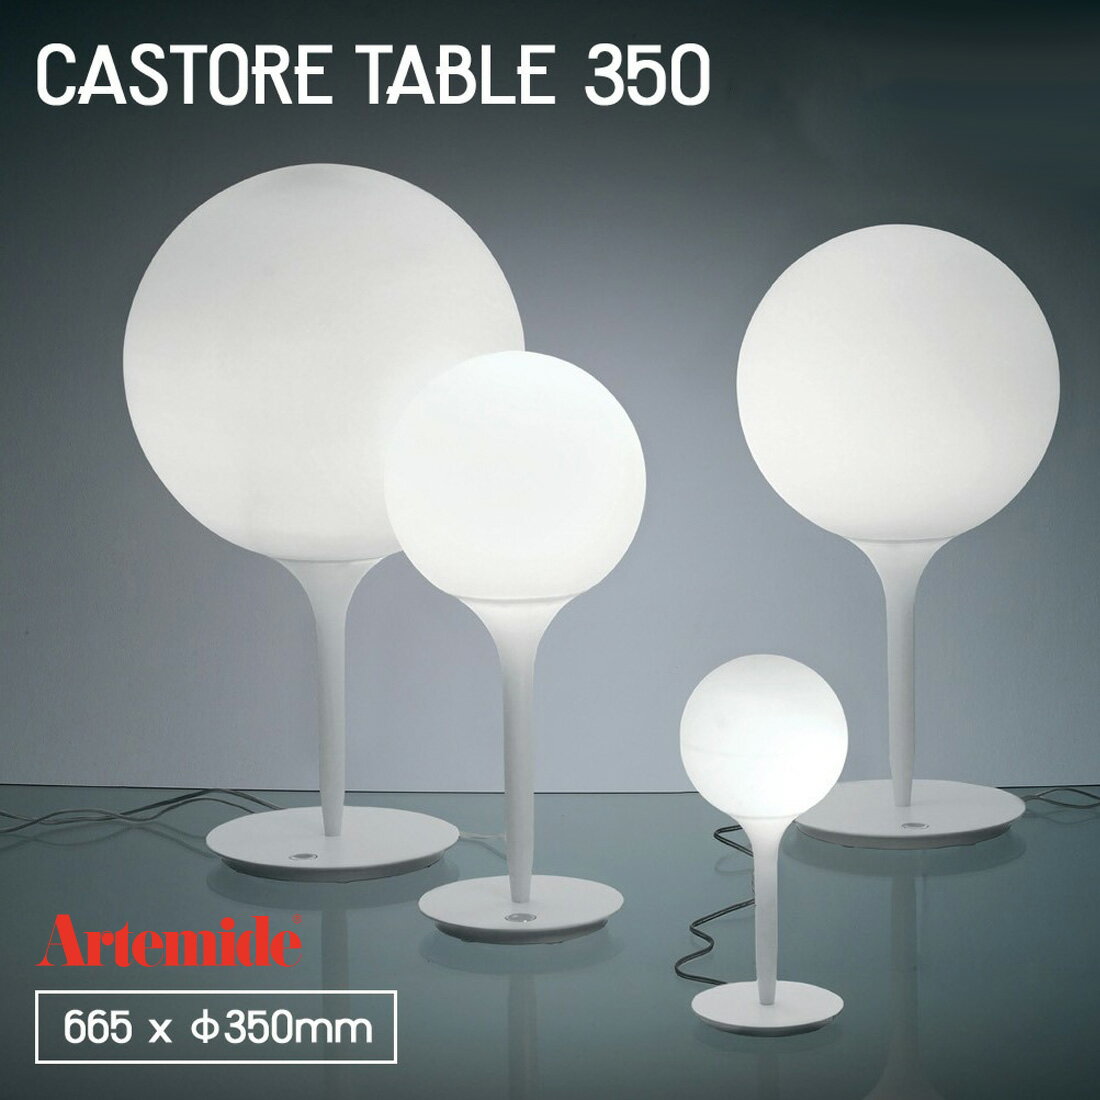 Artemide アルテミデ CASTORE TAVOLO 35 S7221 ライト 照明 リビング キッチン ダイニング スタンドライト 卓上